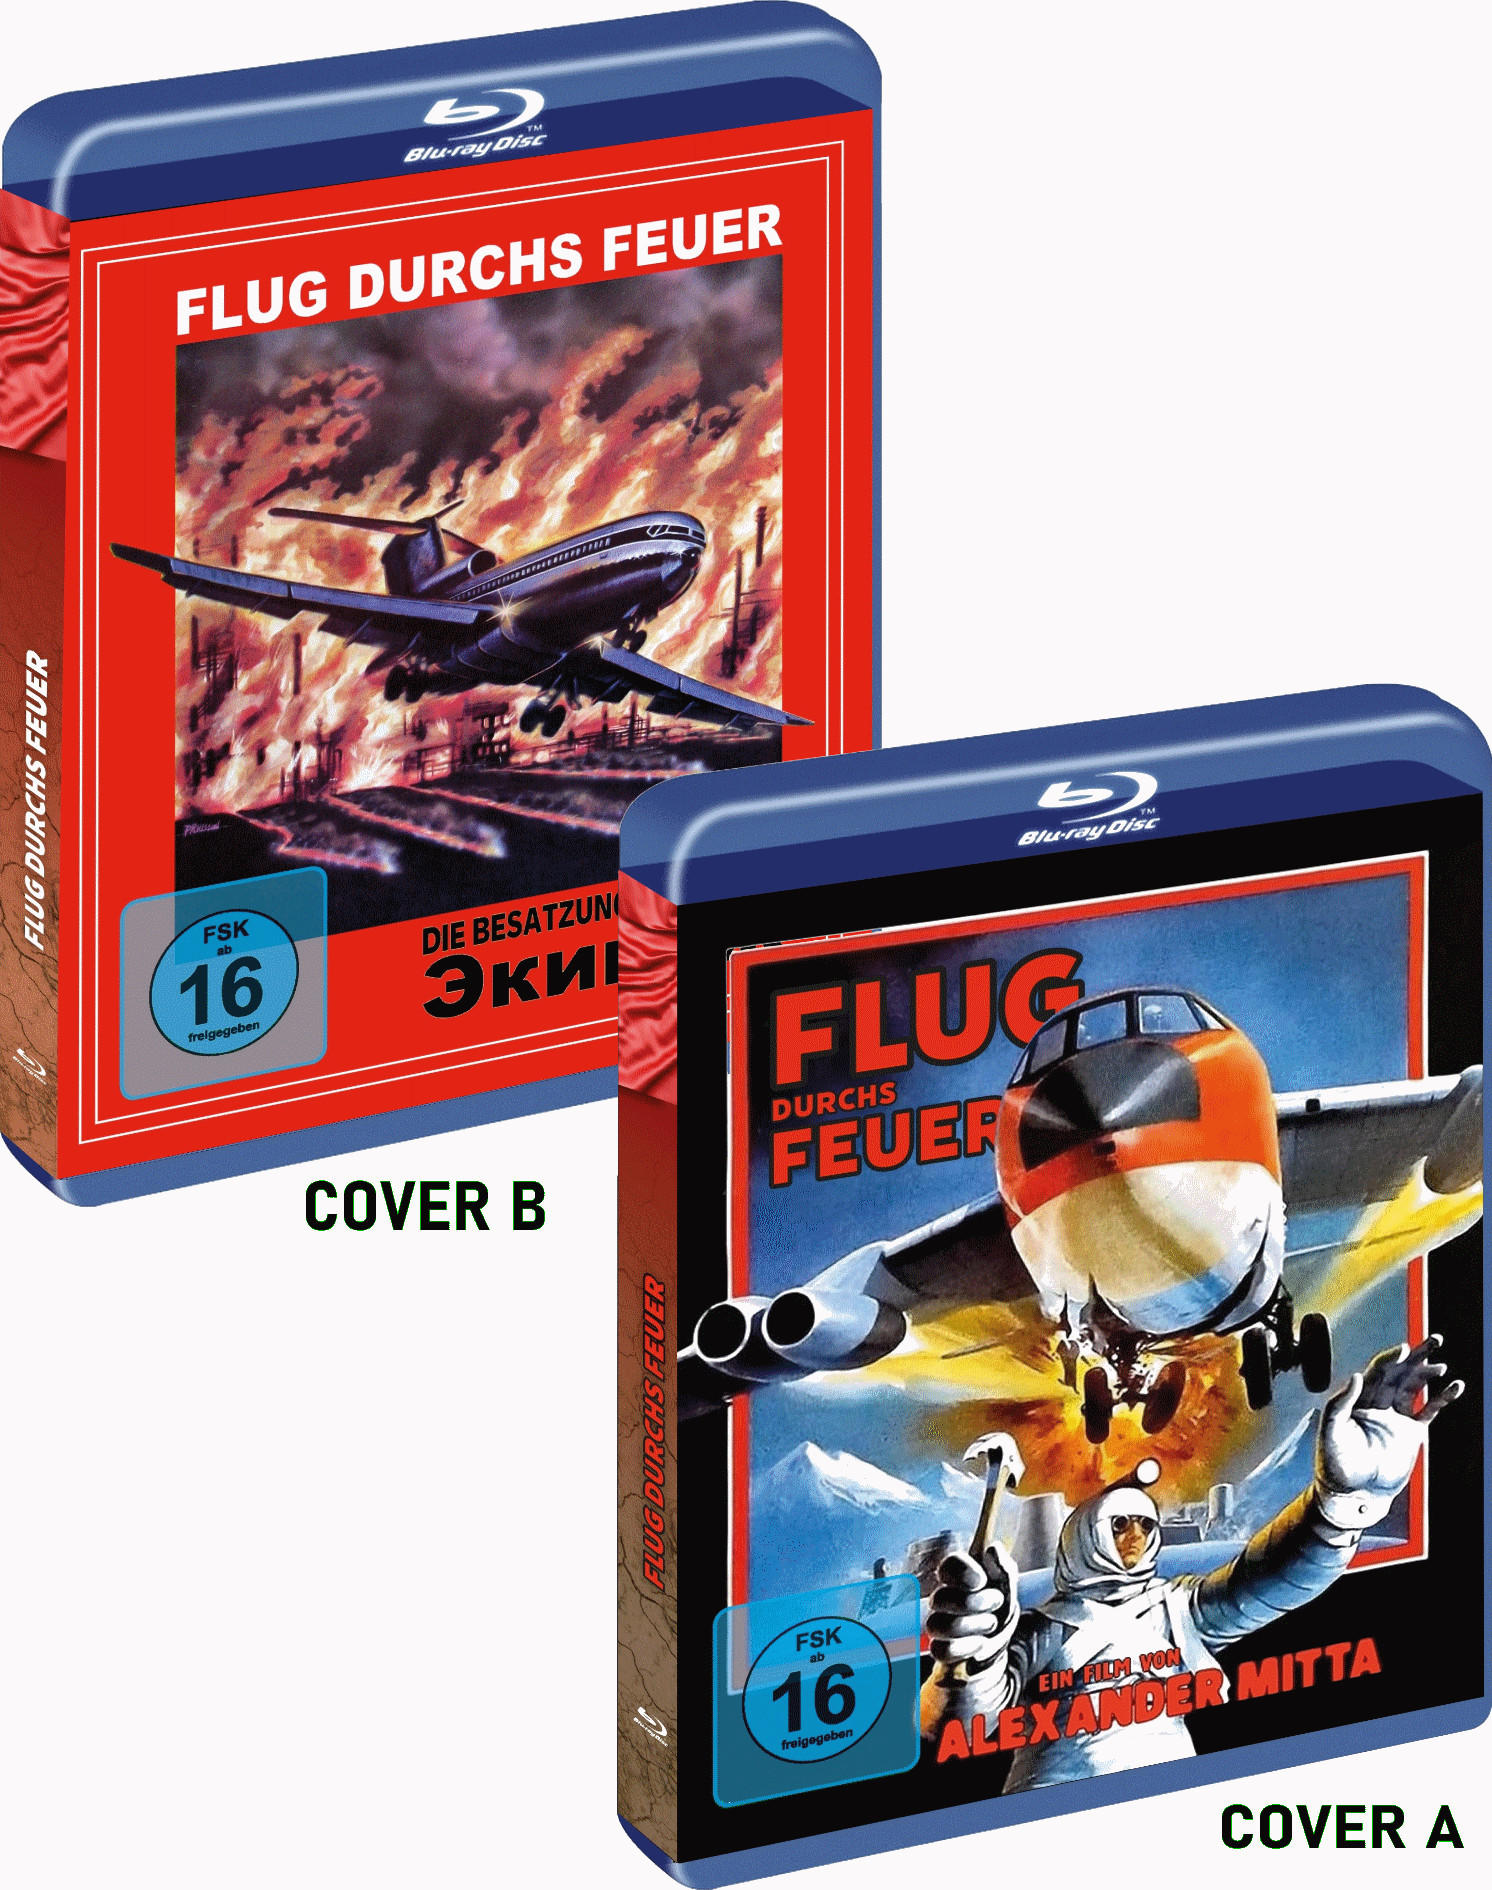 Flug durchs Besatzung) Die Feuer Blu-ray (a.k.a